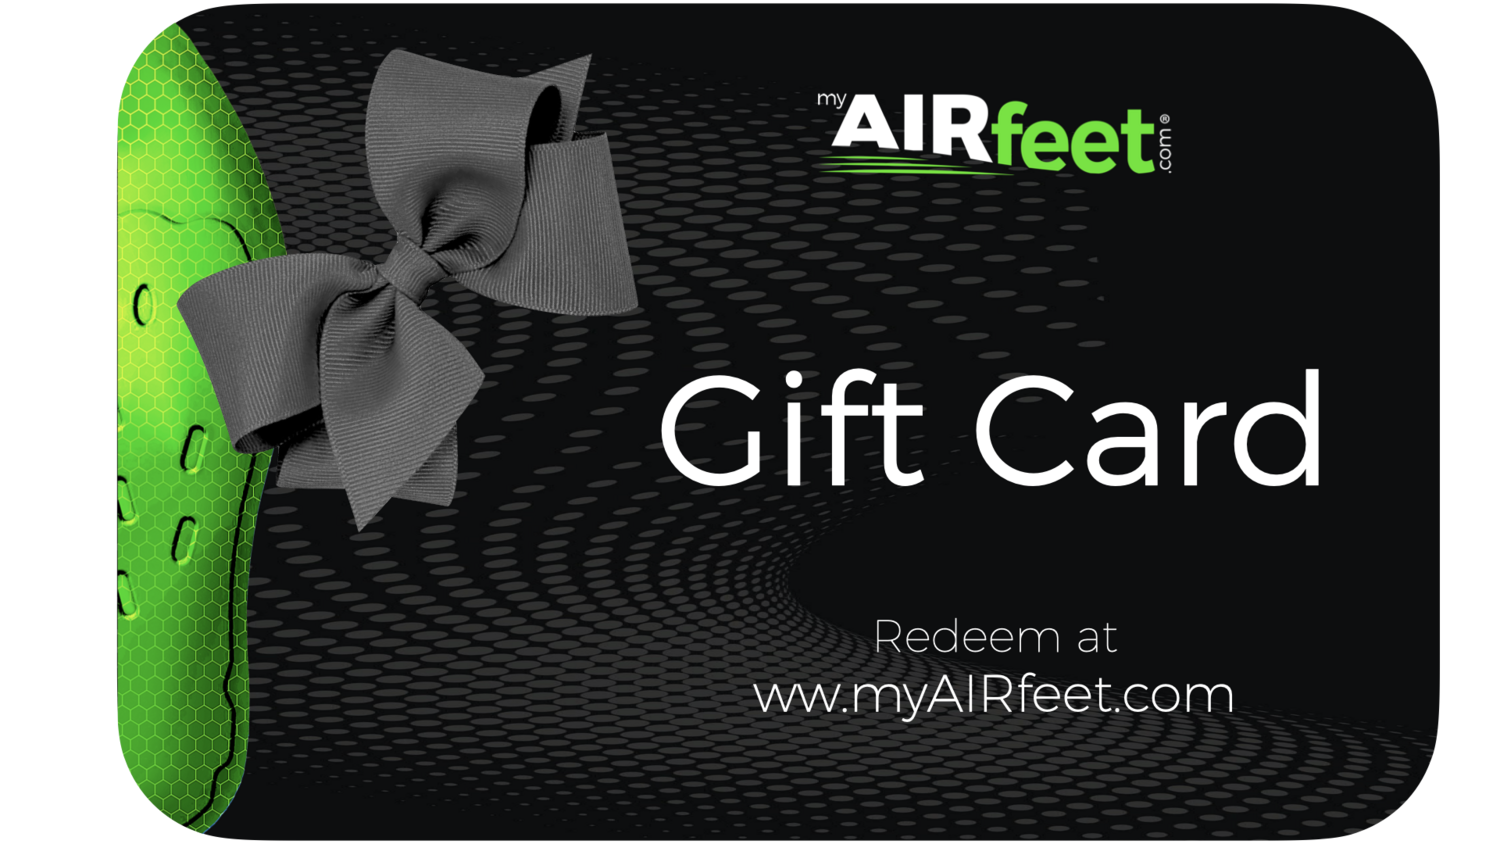 AIRfeet Gift Card